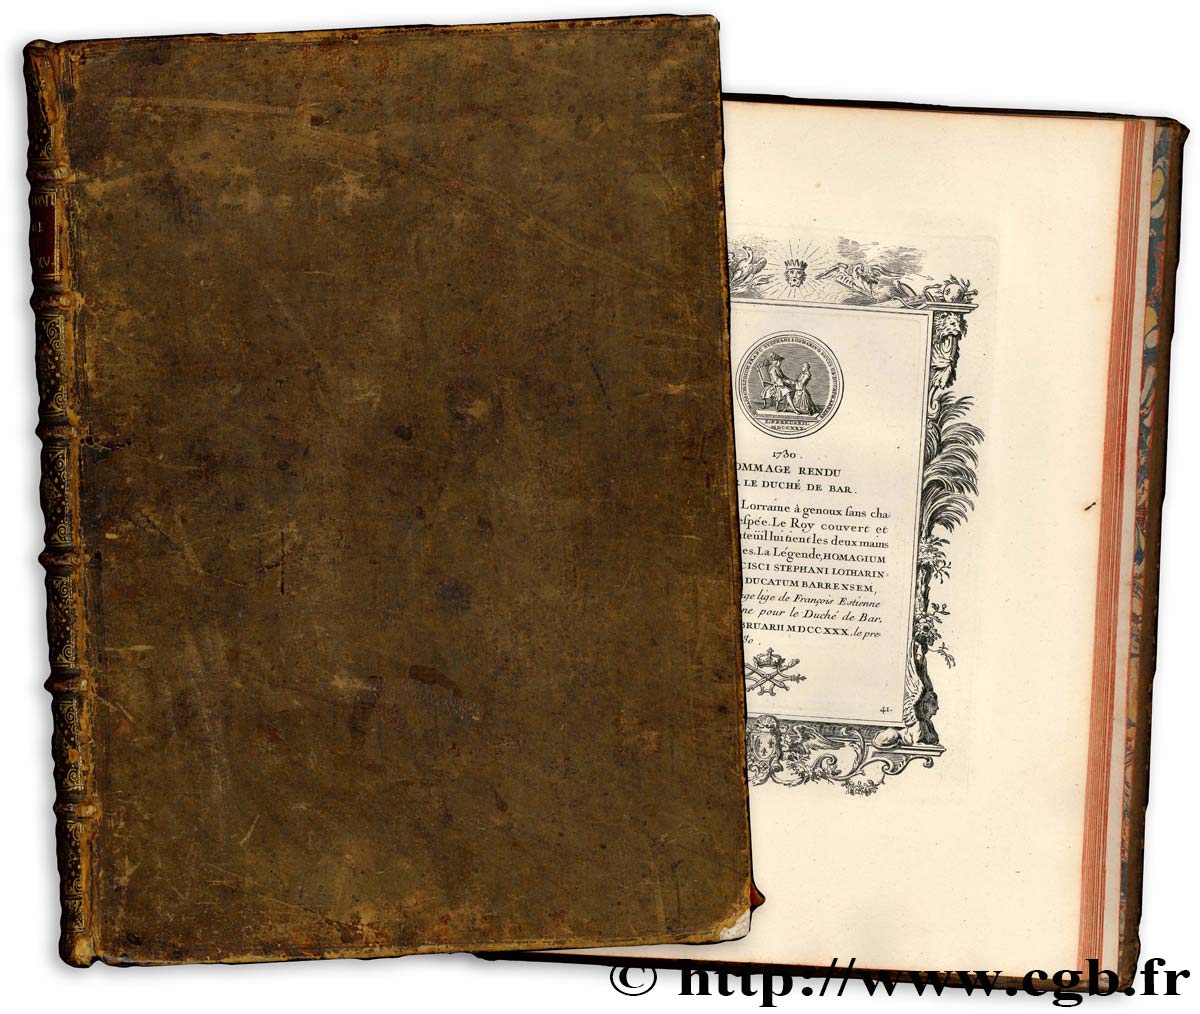 BOOKS - NUMISMATIC BIBLIOPHILIA Godonnesche (Nicolas) “Médailles du règne de Louis XV”. S.l.n.d. (c. 1736) n.d.  AU